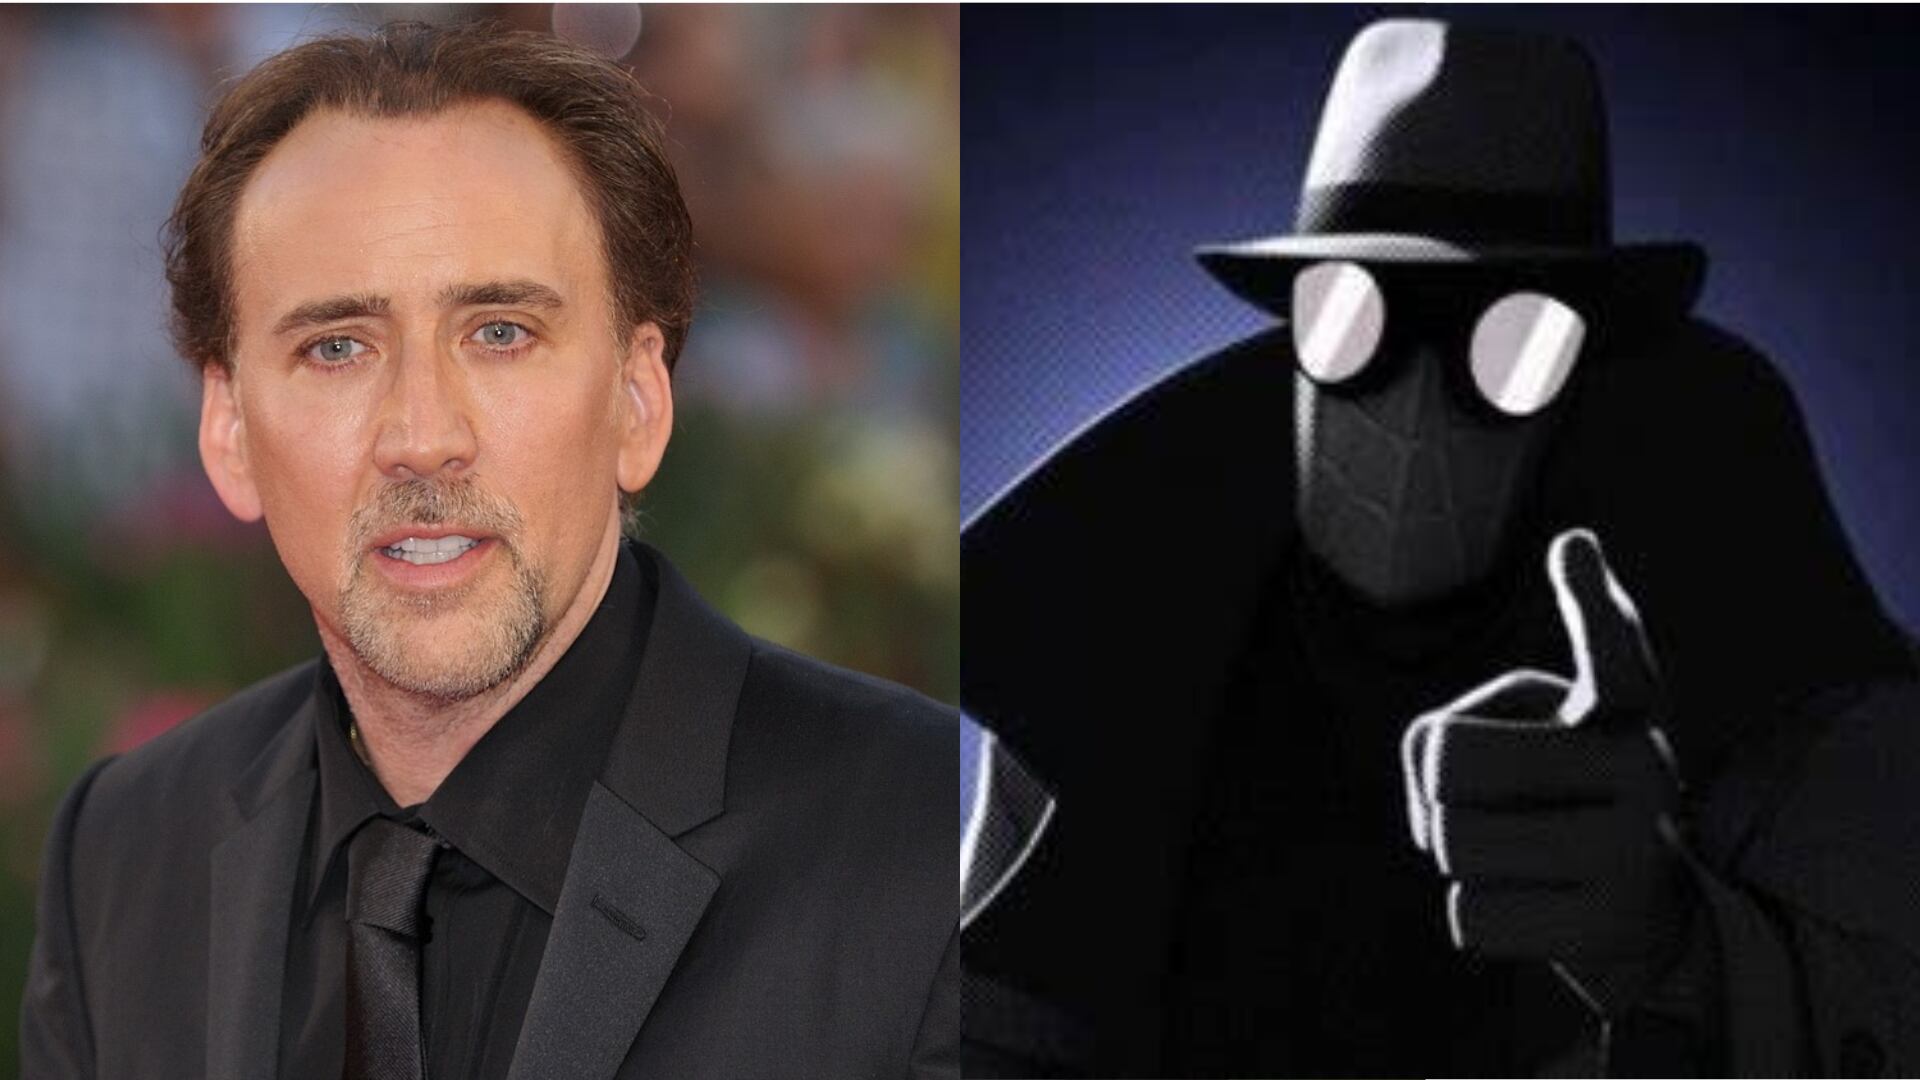 Nicolas Cage interpretará a Spider-Man Noir, la versión oscura del superhéroe, en una nueva serie de Amazon Prime Video.